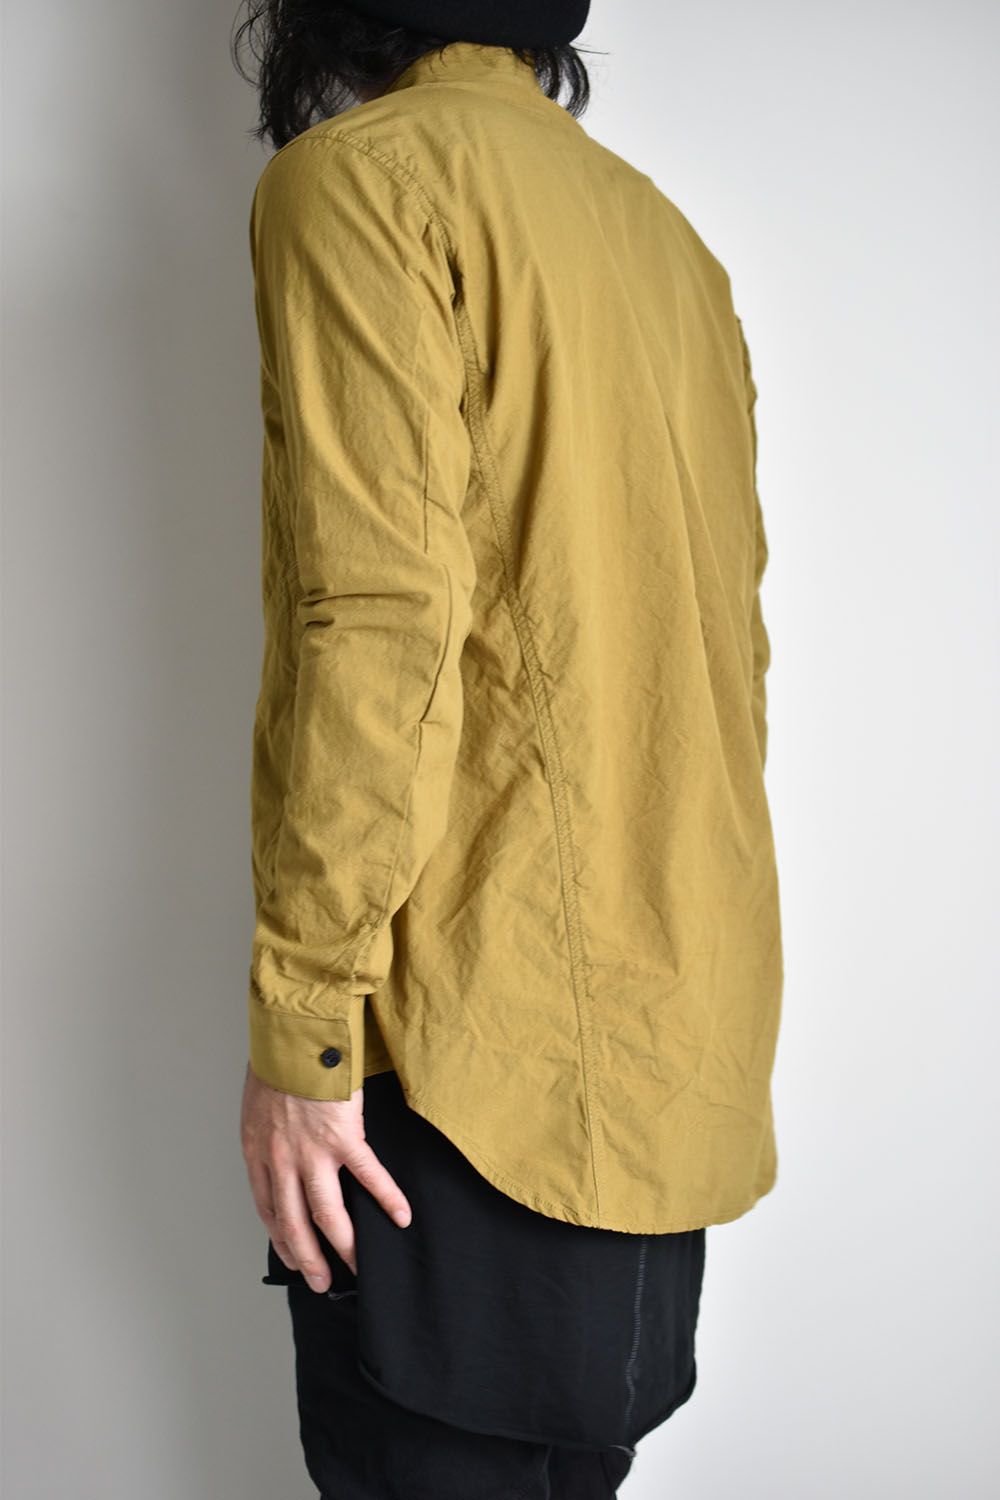 80/2 Cotton broad Band collar shirt"Leaf Yellow"/ コットンバンドカラーシャツ"リーフイエロー"